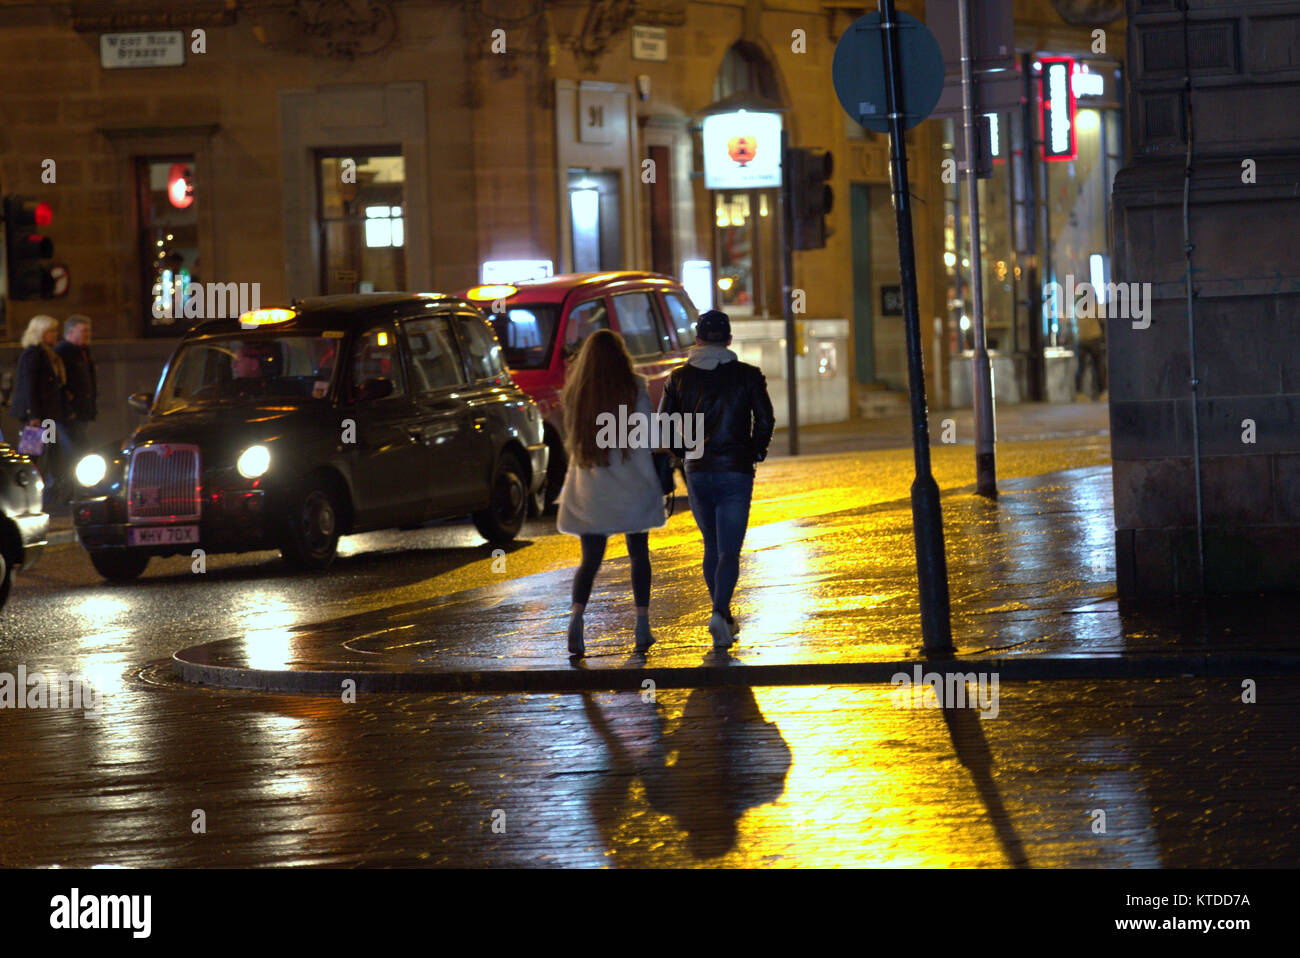 Kiesige urbanen Nacht Zeit Glasgow nasse Straße leben junges Paar ein Junge und ein Mädchen gehen auf eine Nacht bis spät am Abend mit dem Taxi Taxis Stockfoto